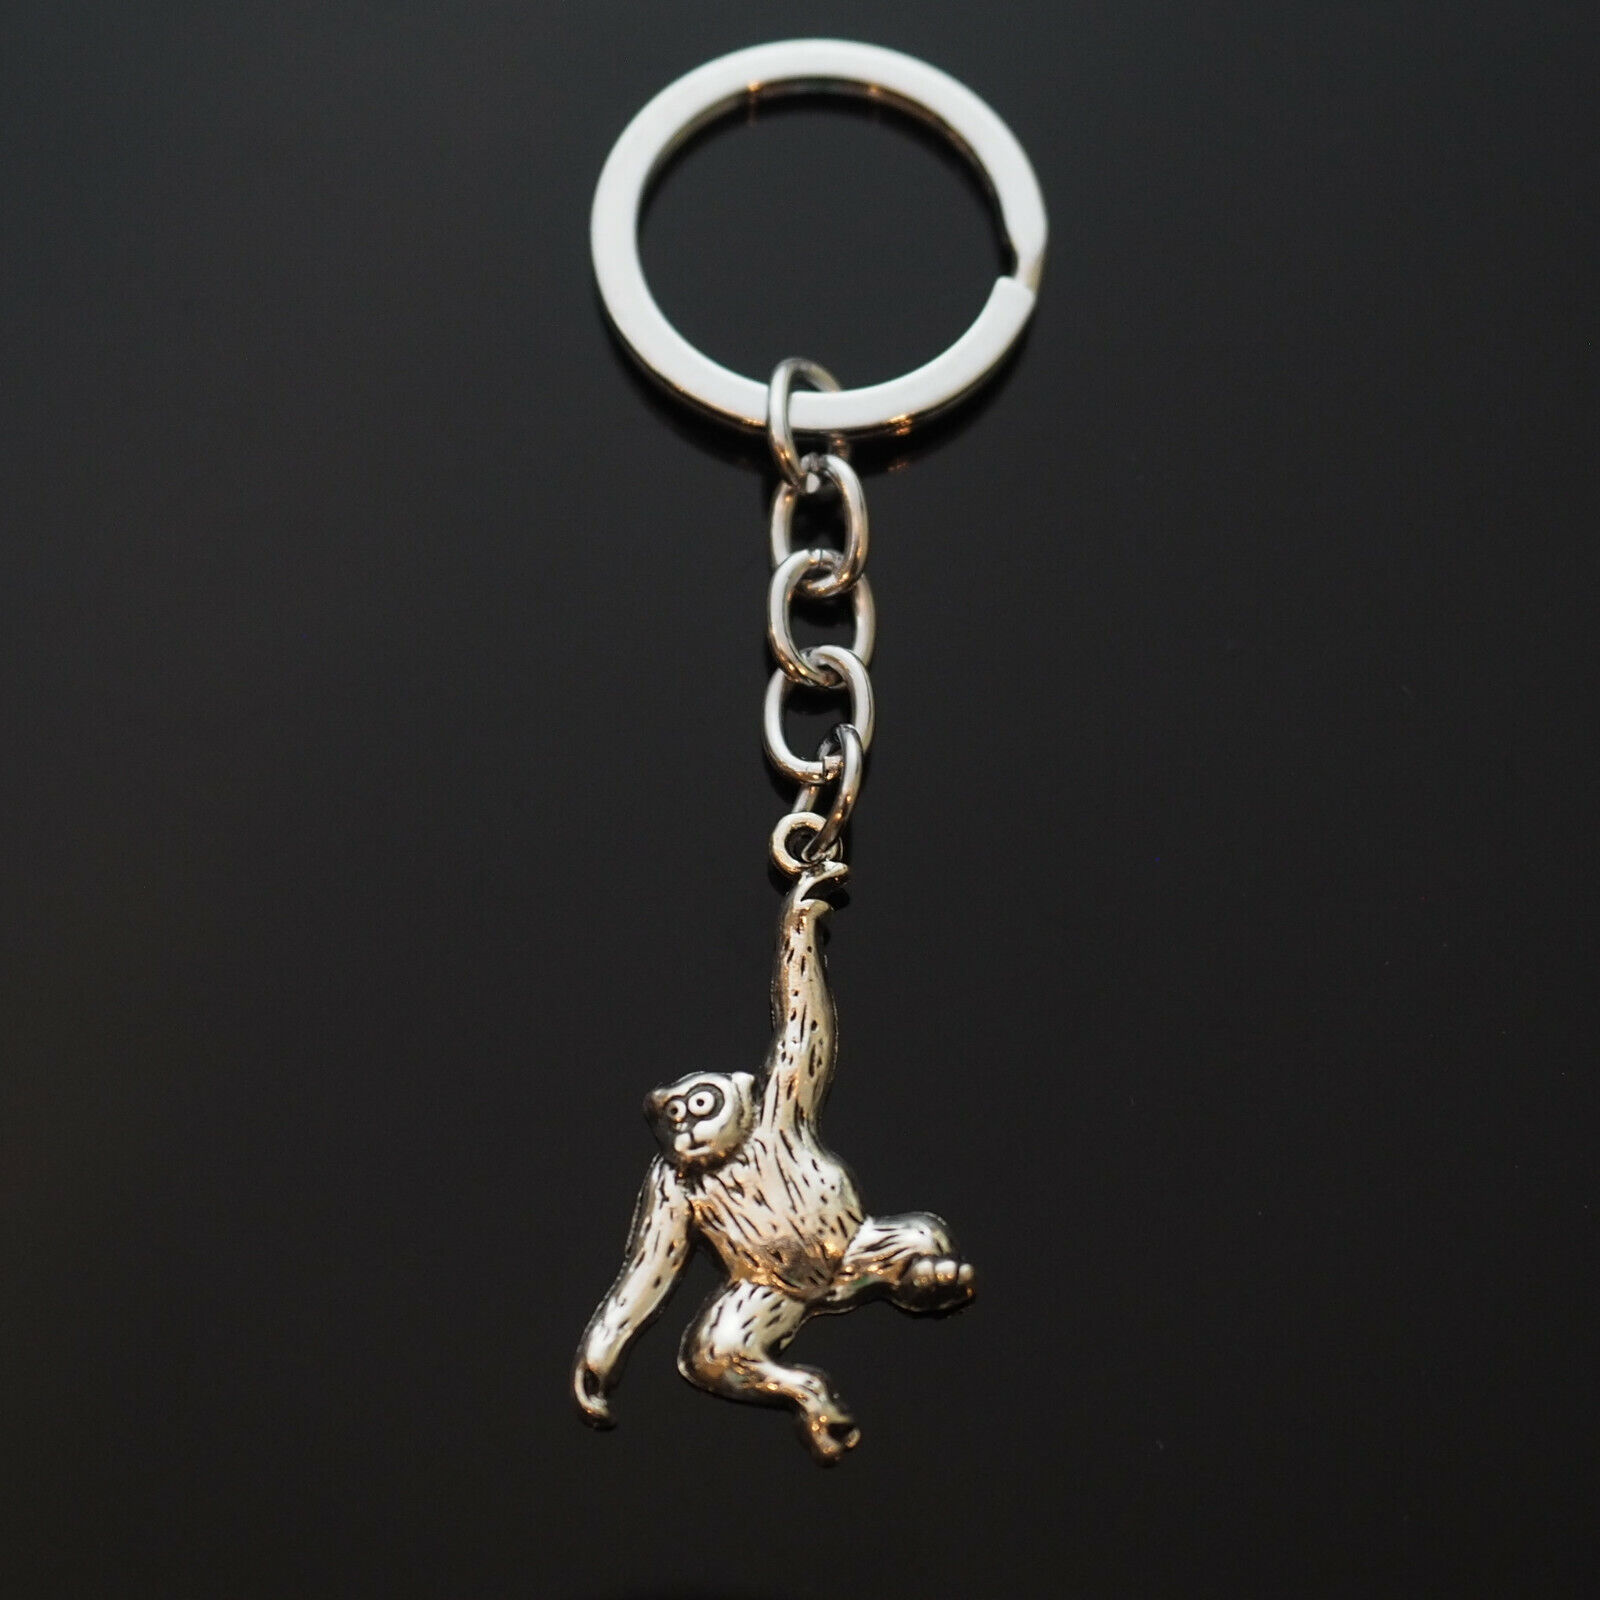 Monkey Chimp Chimpanzee Vintage Silver Charm Keychain Key Chain Zoo Ape Fun Gift